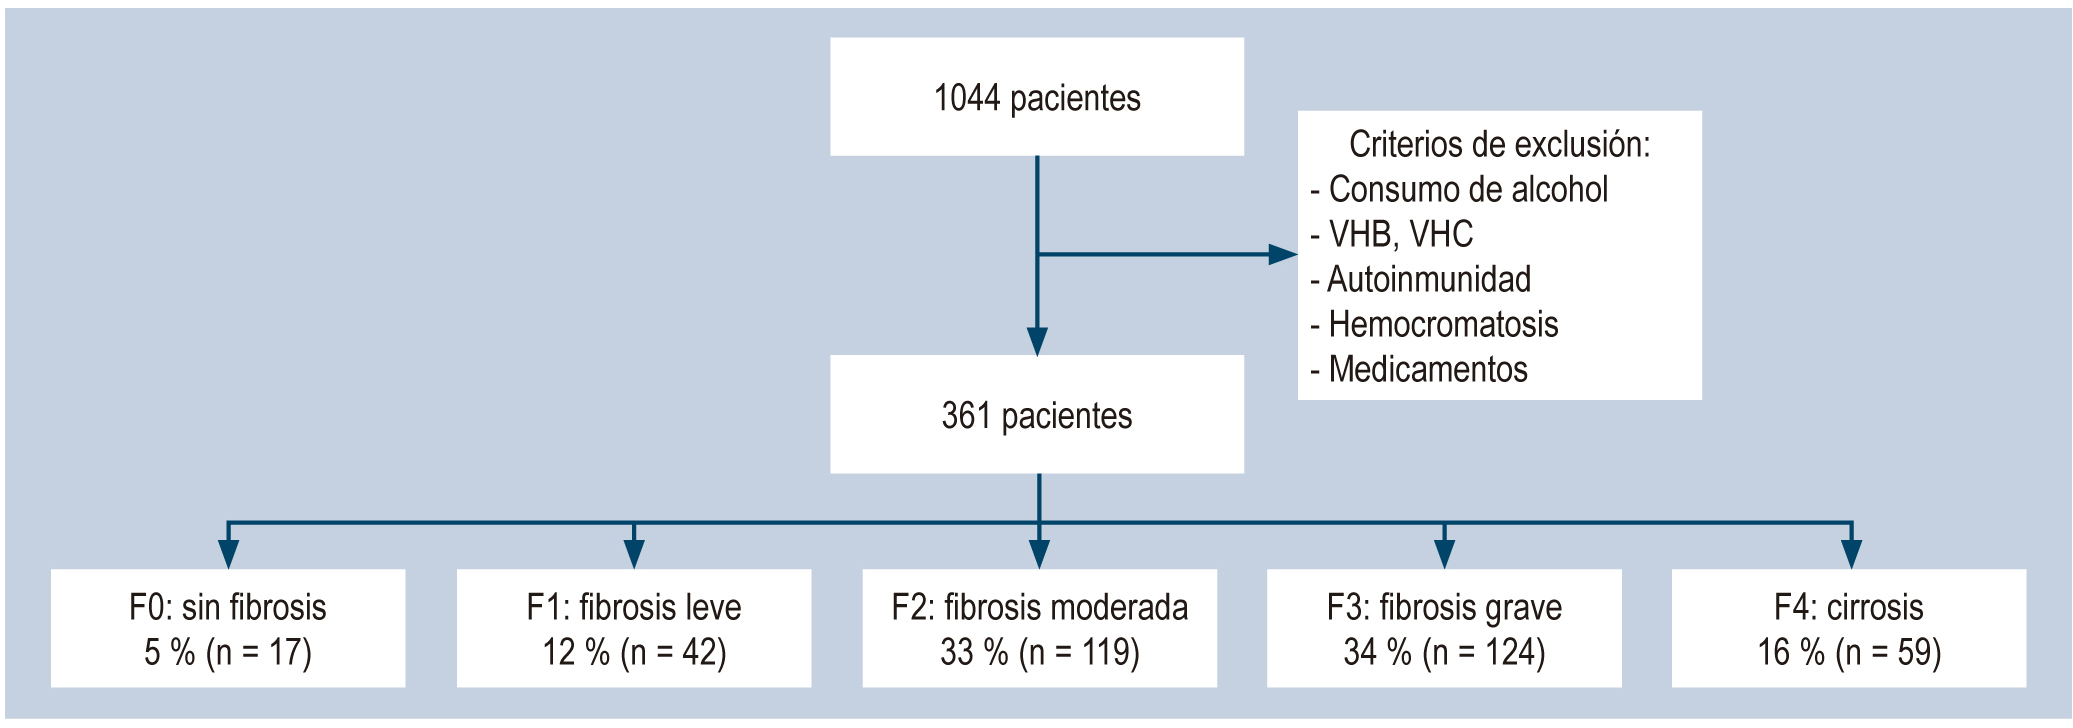 Figura 1. Diagrama de flujo de pacientes.